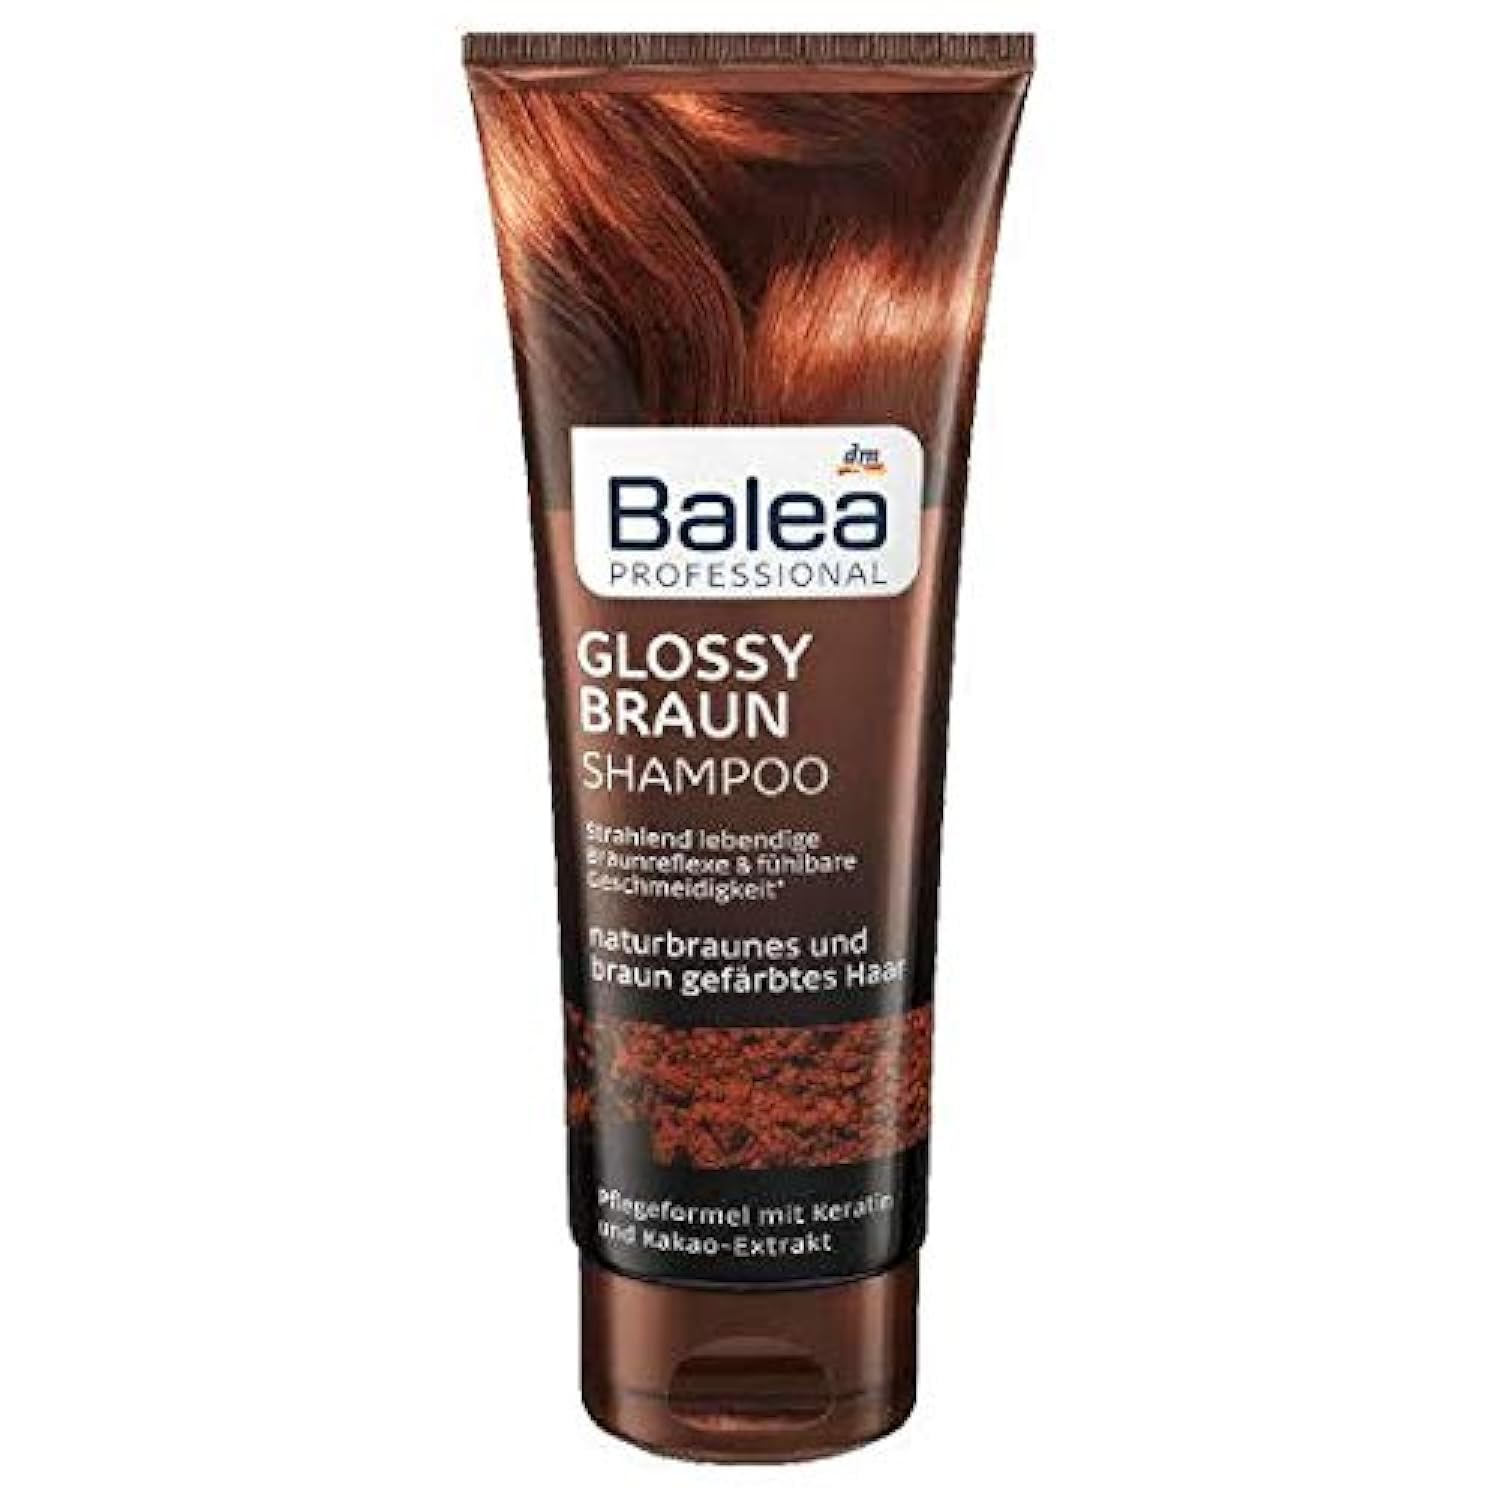 szampon do włosów brązowych balea